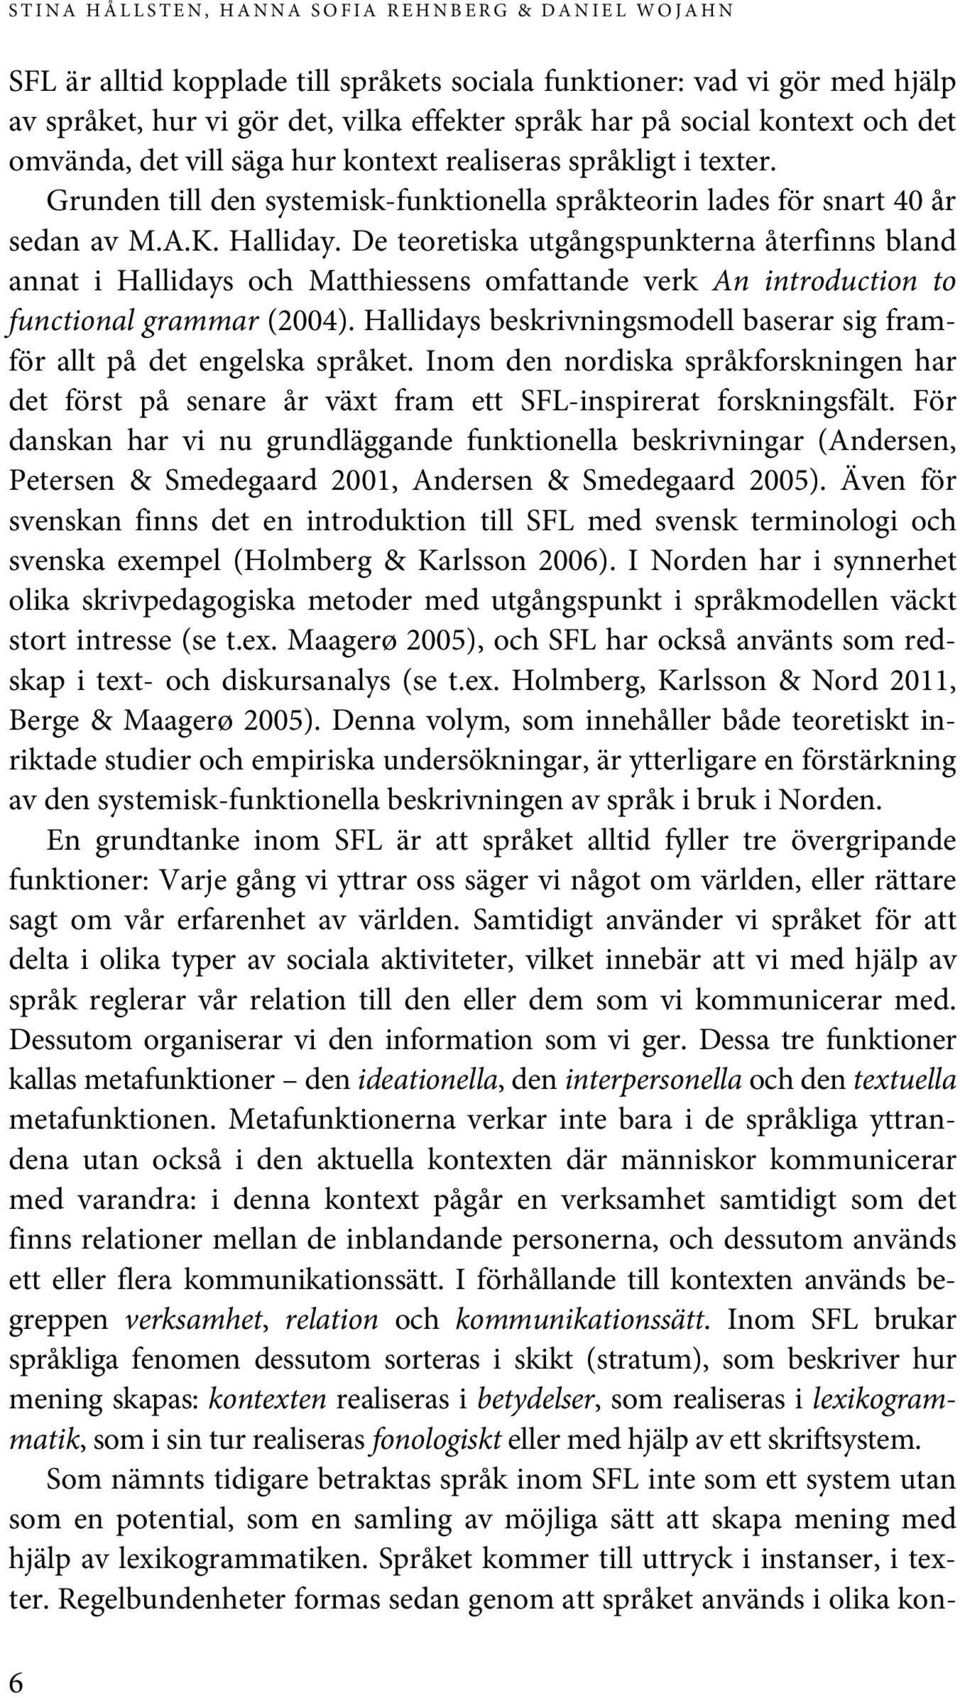 De teoretiska utgångspunkterna återfinns bland annat i Hallidays och Matthiessens omfattande verk An introduction to functional grammar (2004).